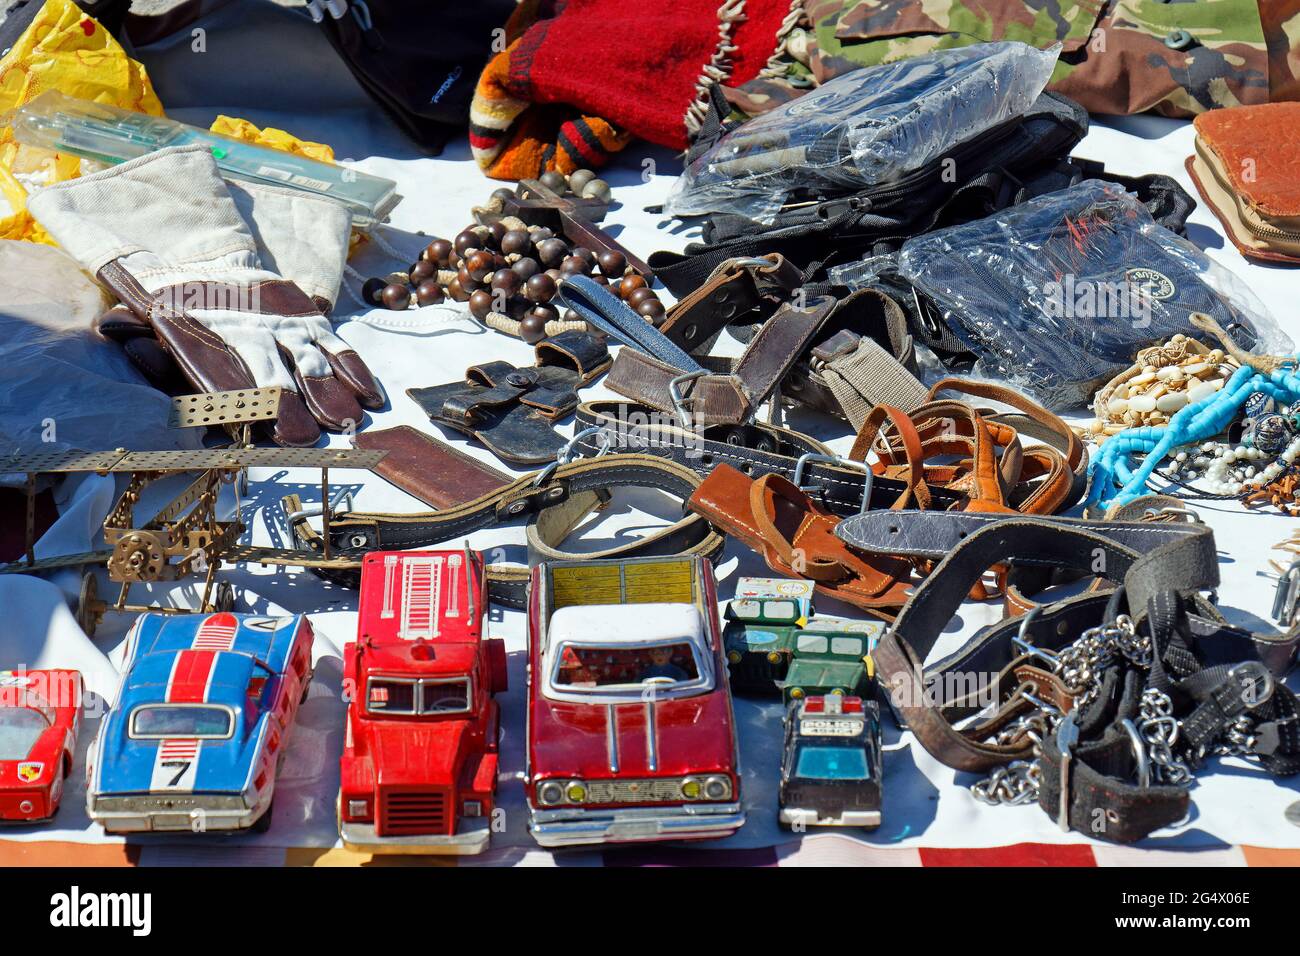 Belgrado, Serbia - 29 maggio 2021: Vecchie auto giocattolo retrò e altri oggetti da collezione cimeli venduti sul mercato delle pulci a Belgrado per collezionisti. Foto Stock